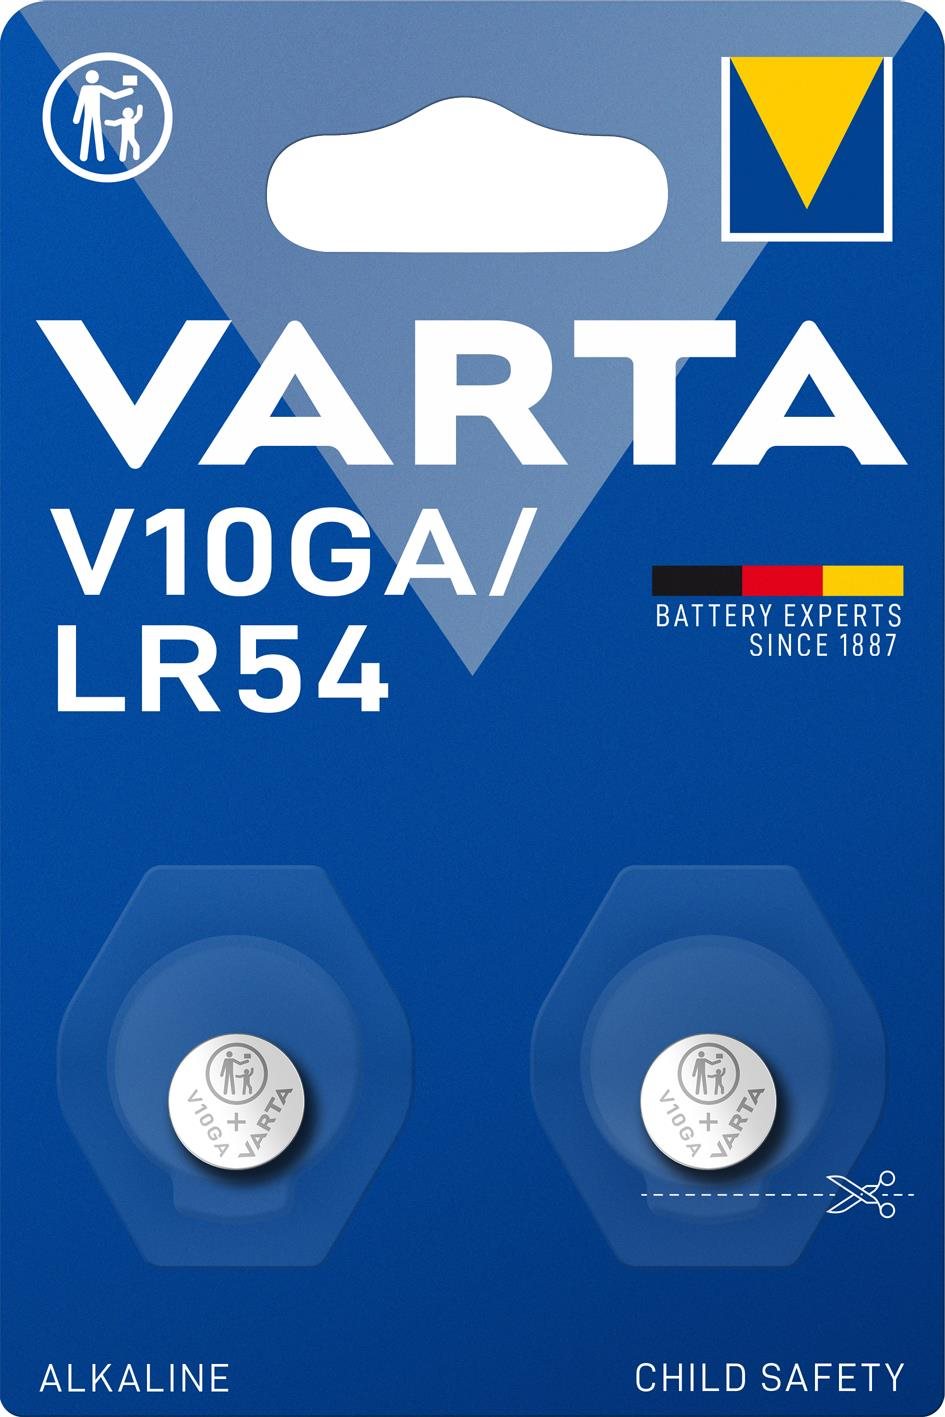 VARTA V10GA/LR54 Speciális alkáli elem - 2 db